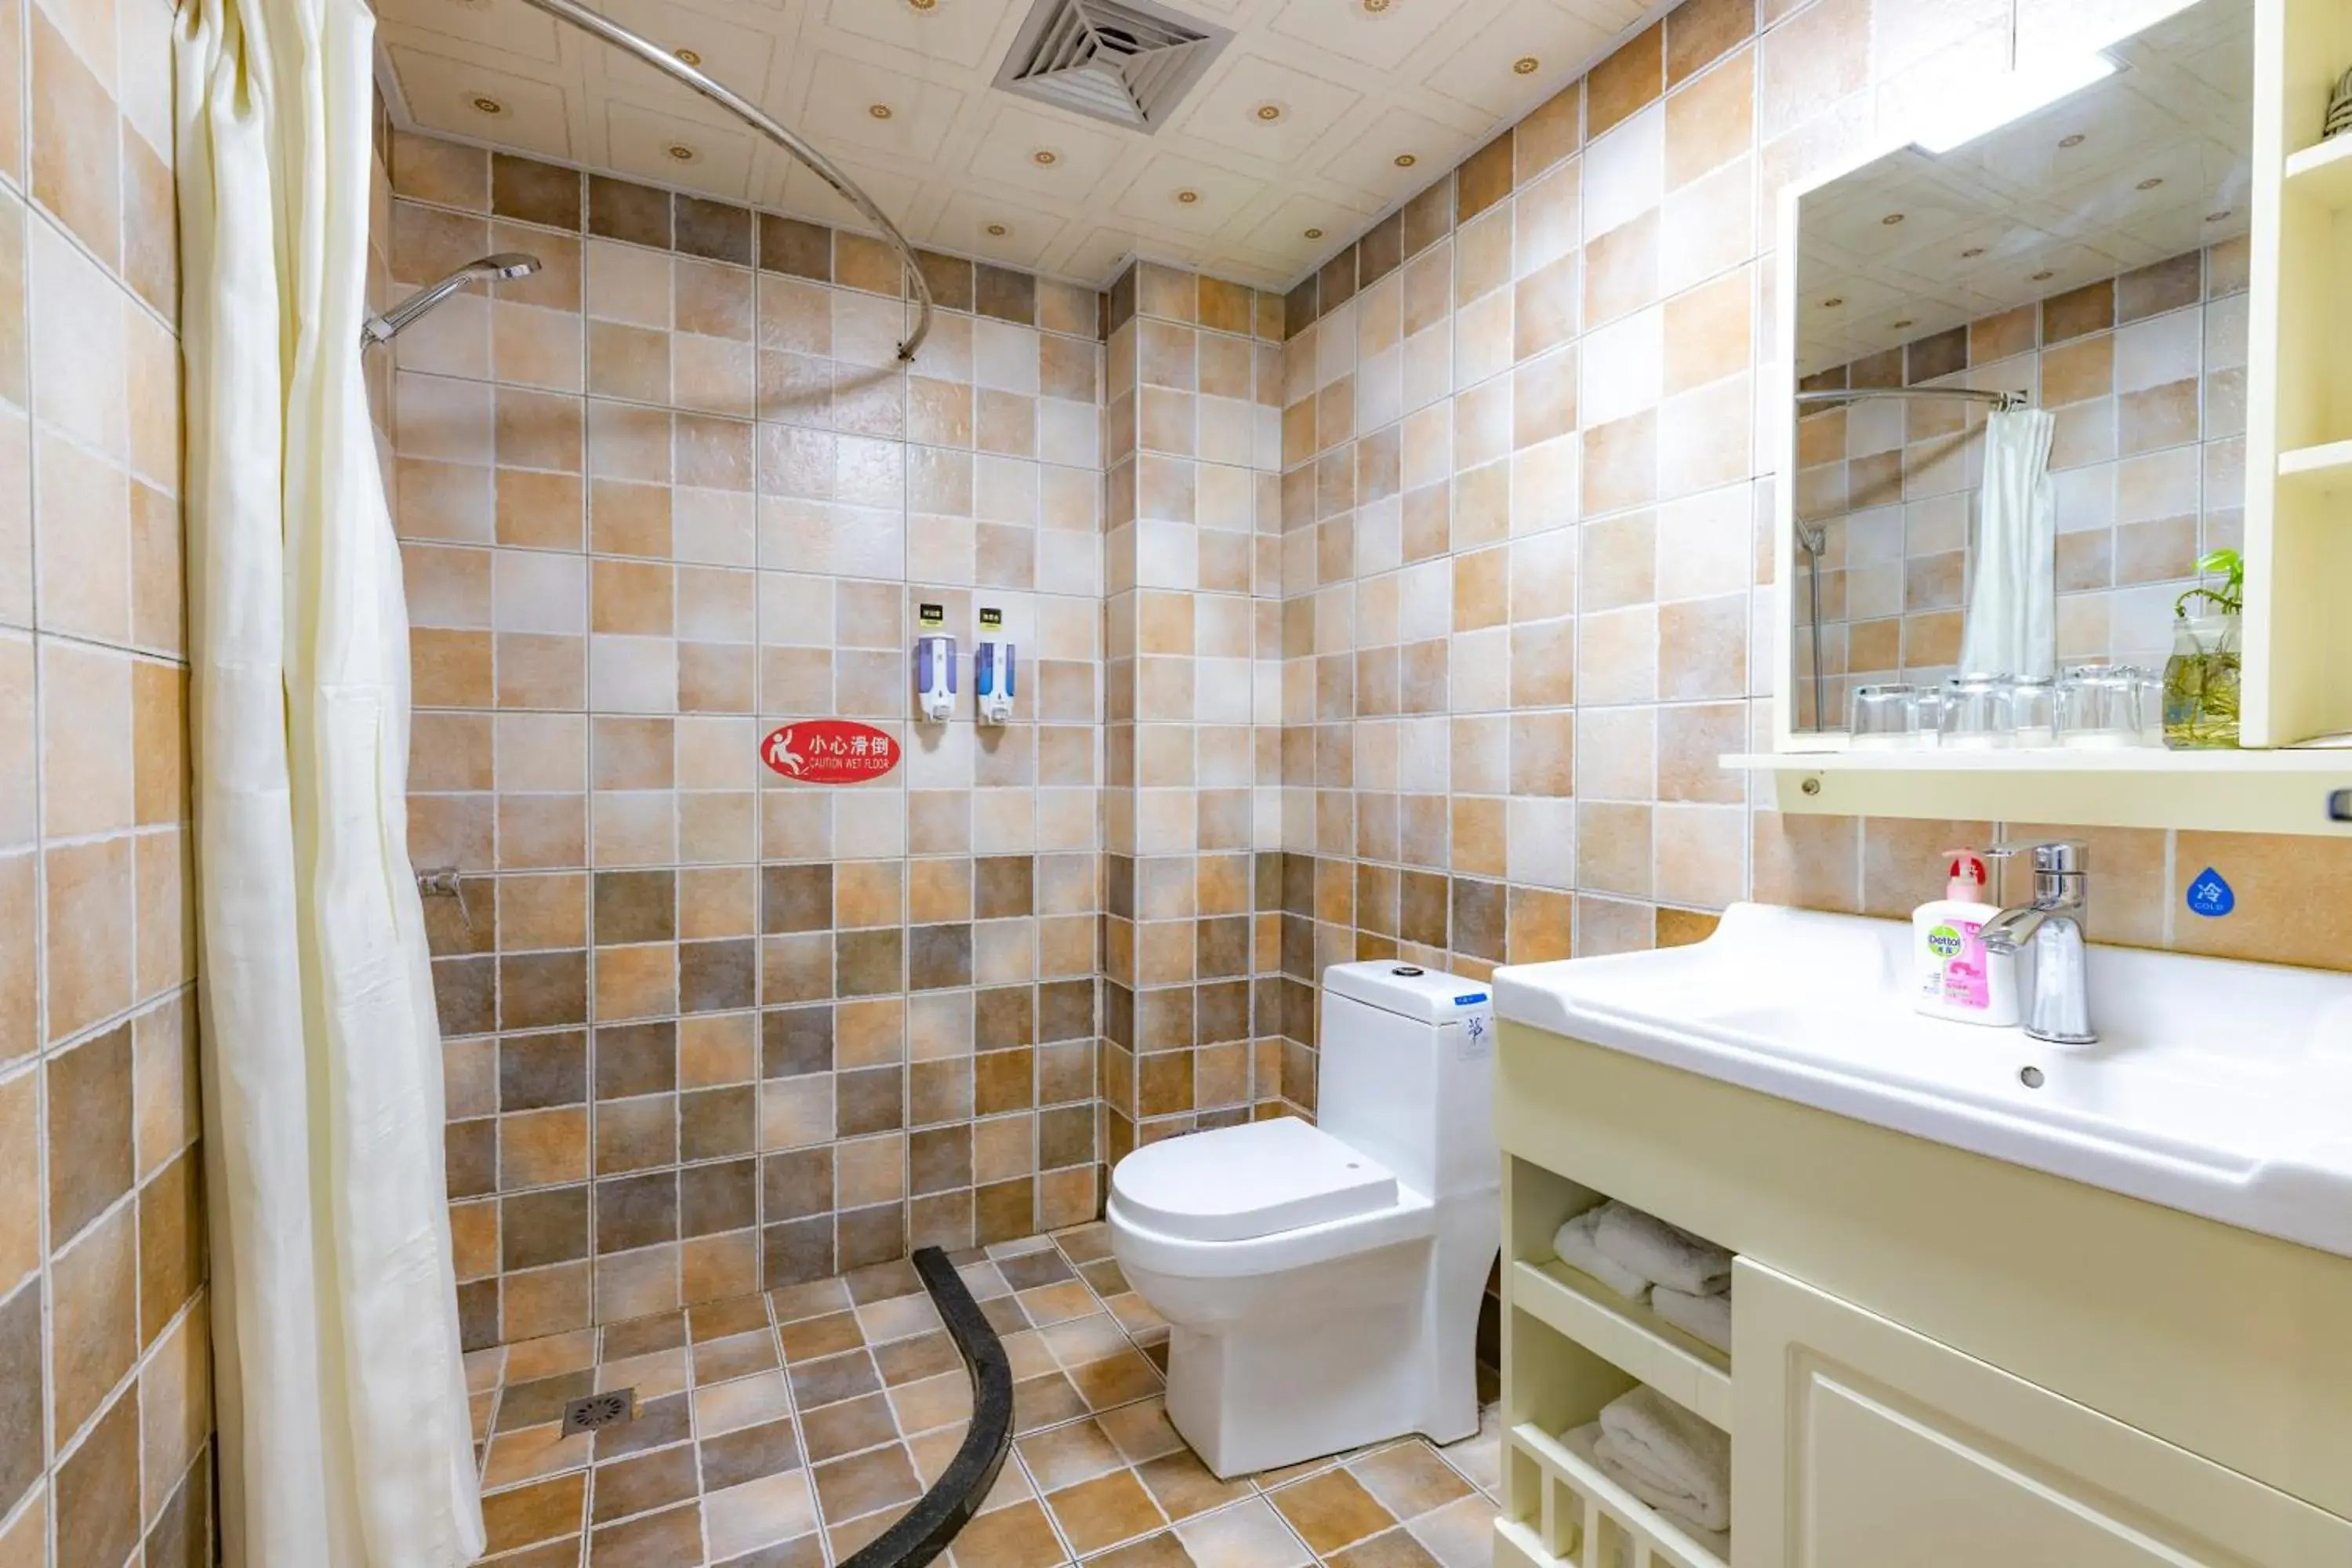 Bathroom in Chengdu Dreams Travel International Youth Hostel